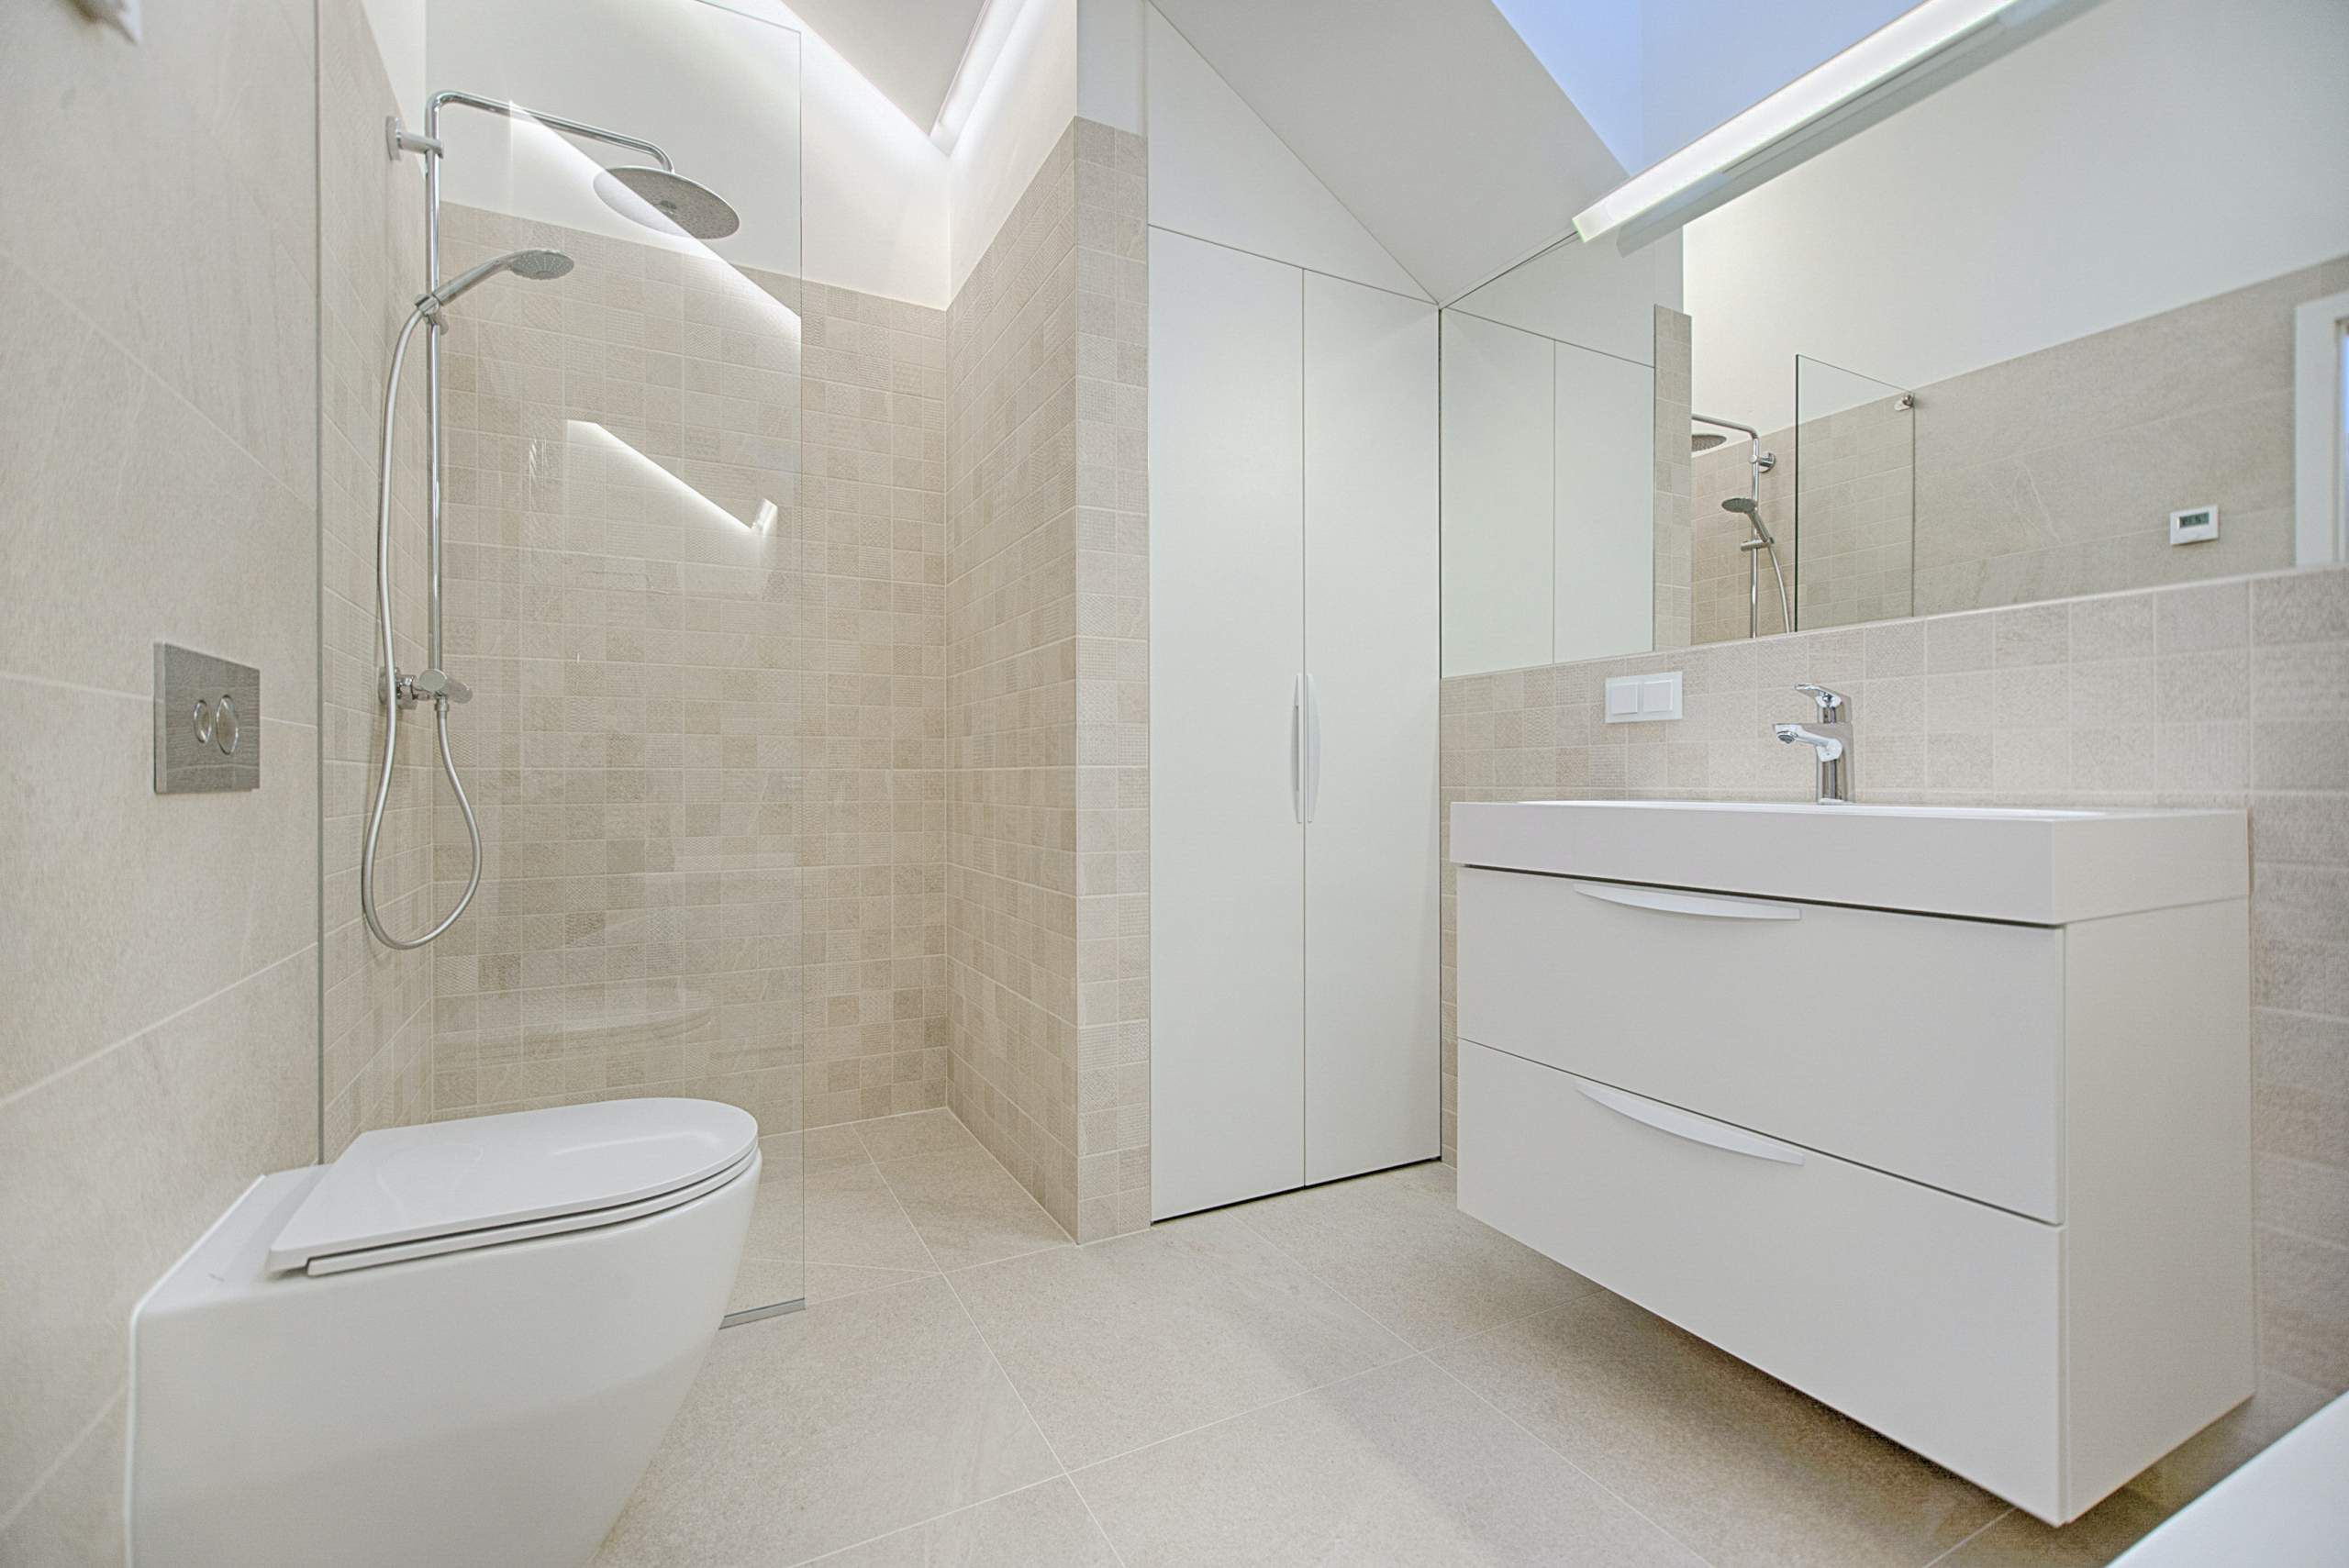 Das Bild zeigt ein Badezimmer, welches kurz zuvor gereinigt wurde. Es ist weiß und modern eingerichtet.